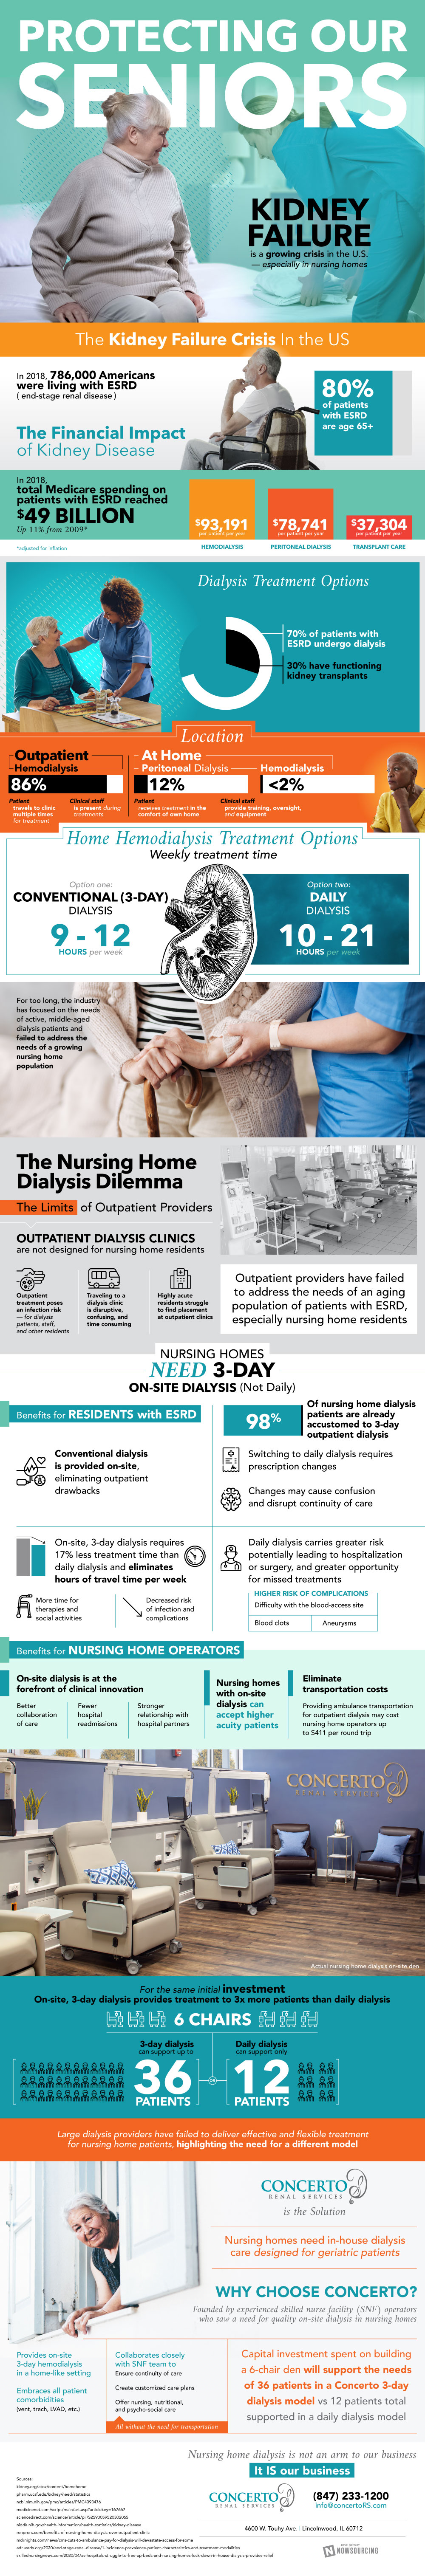 nursing home dialysis